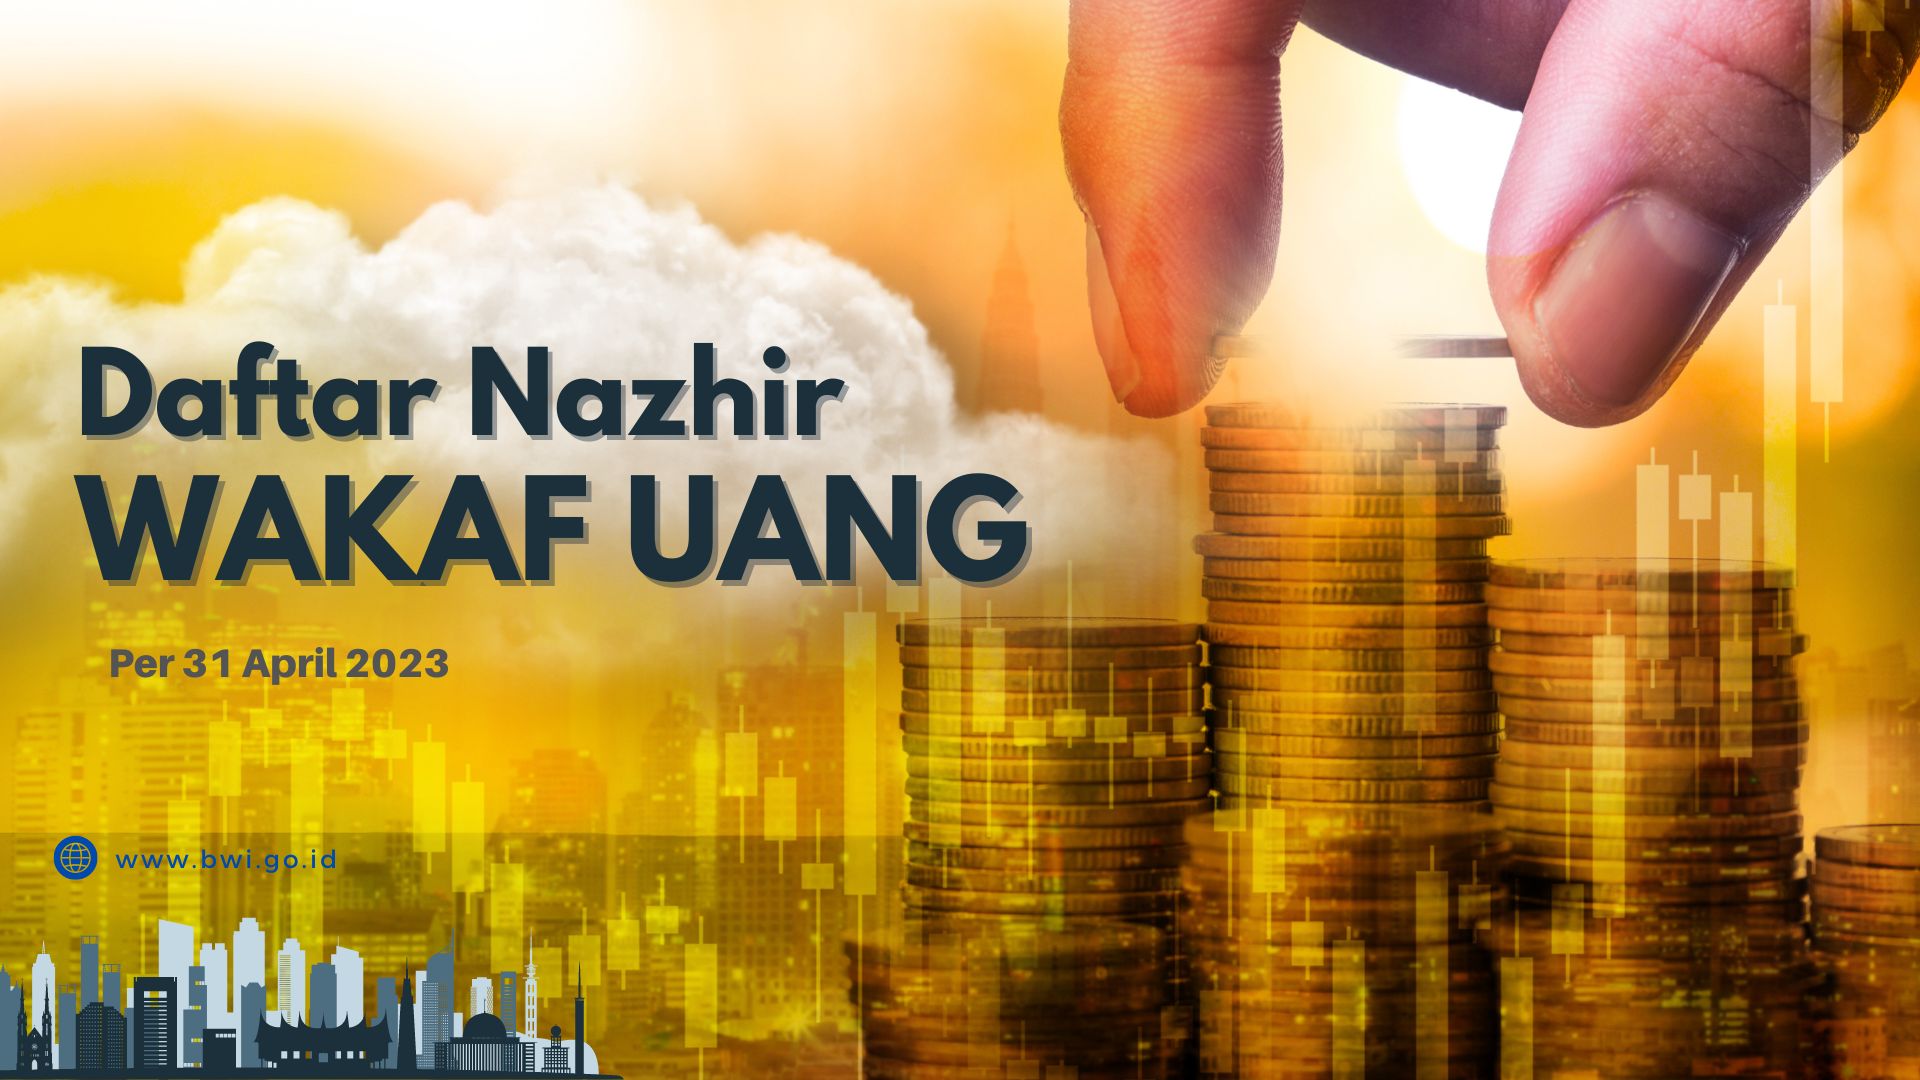 Daftar Nazhir Wakaf Uang per April 2023